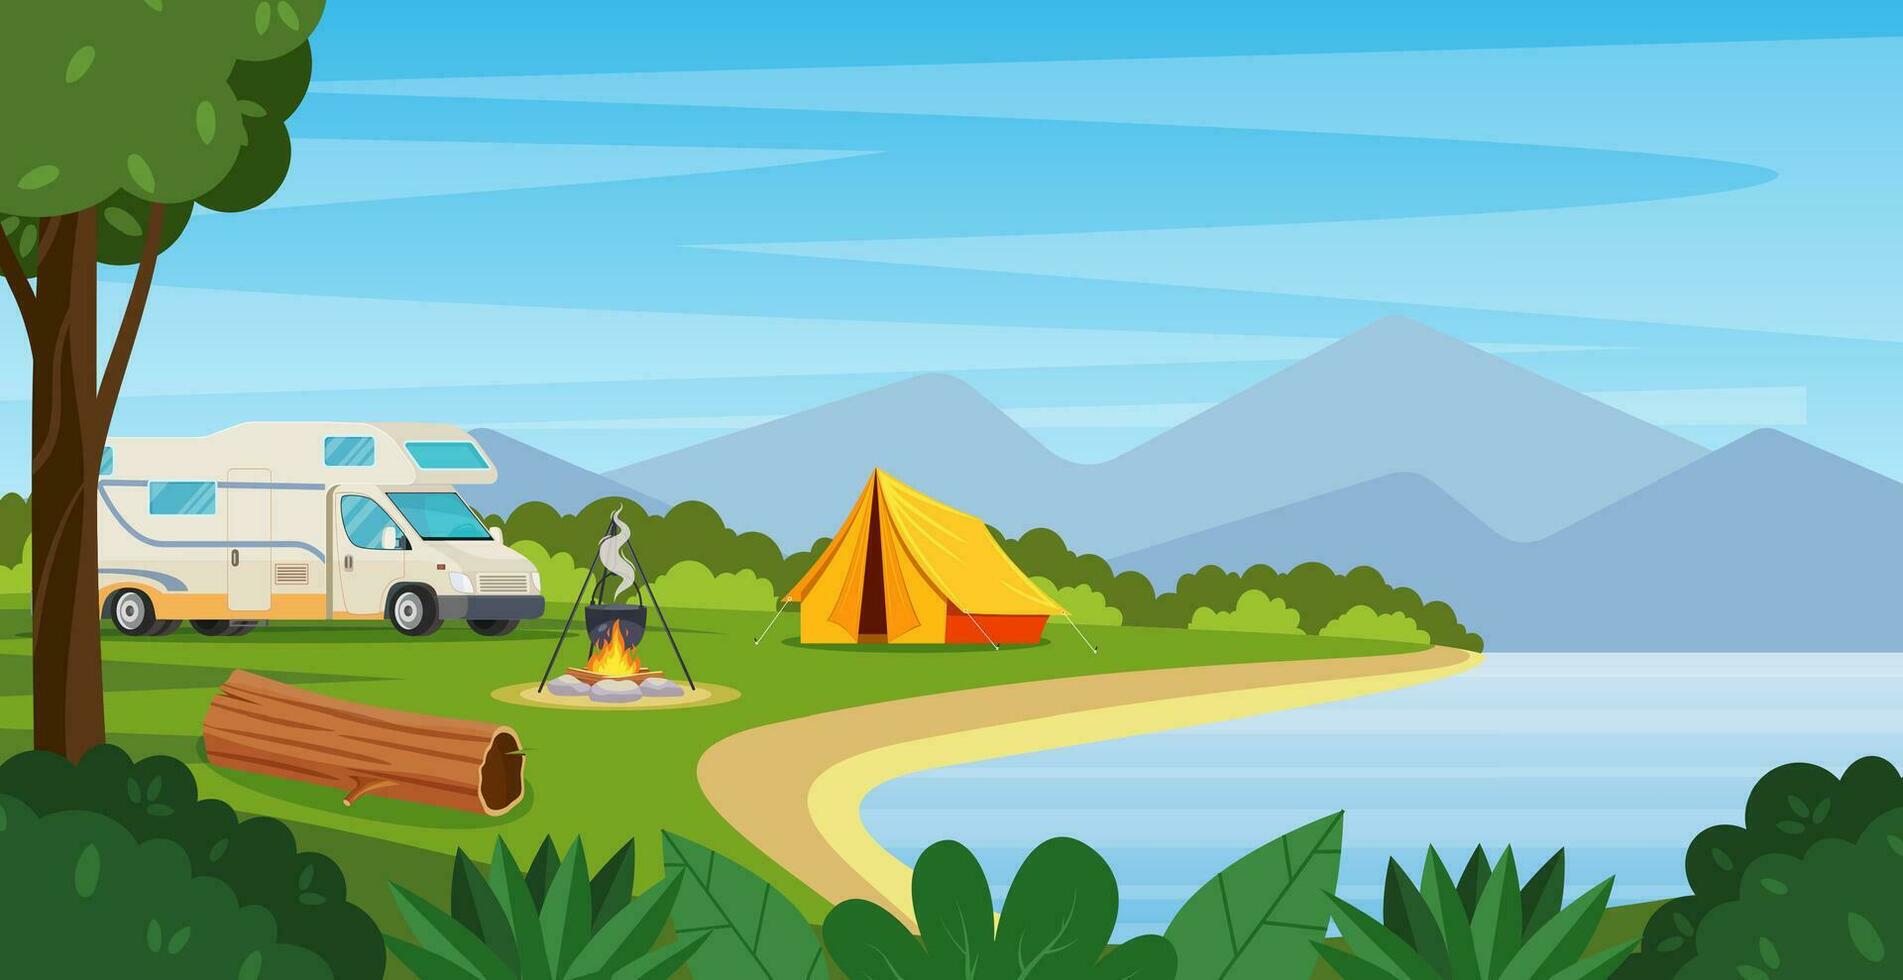 été camp avec feu, tente, van. dessin animé paysage avec montagne, forêt et site de camp. équipement pour voyage, randonnée. vecteur illustration dans plat style